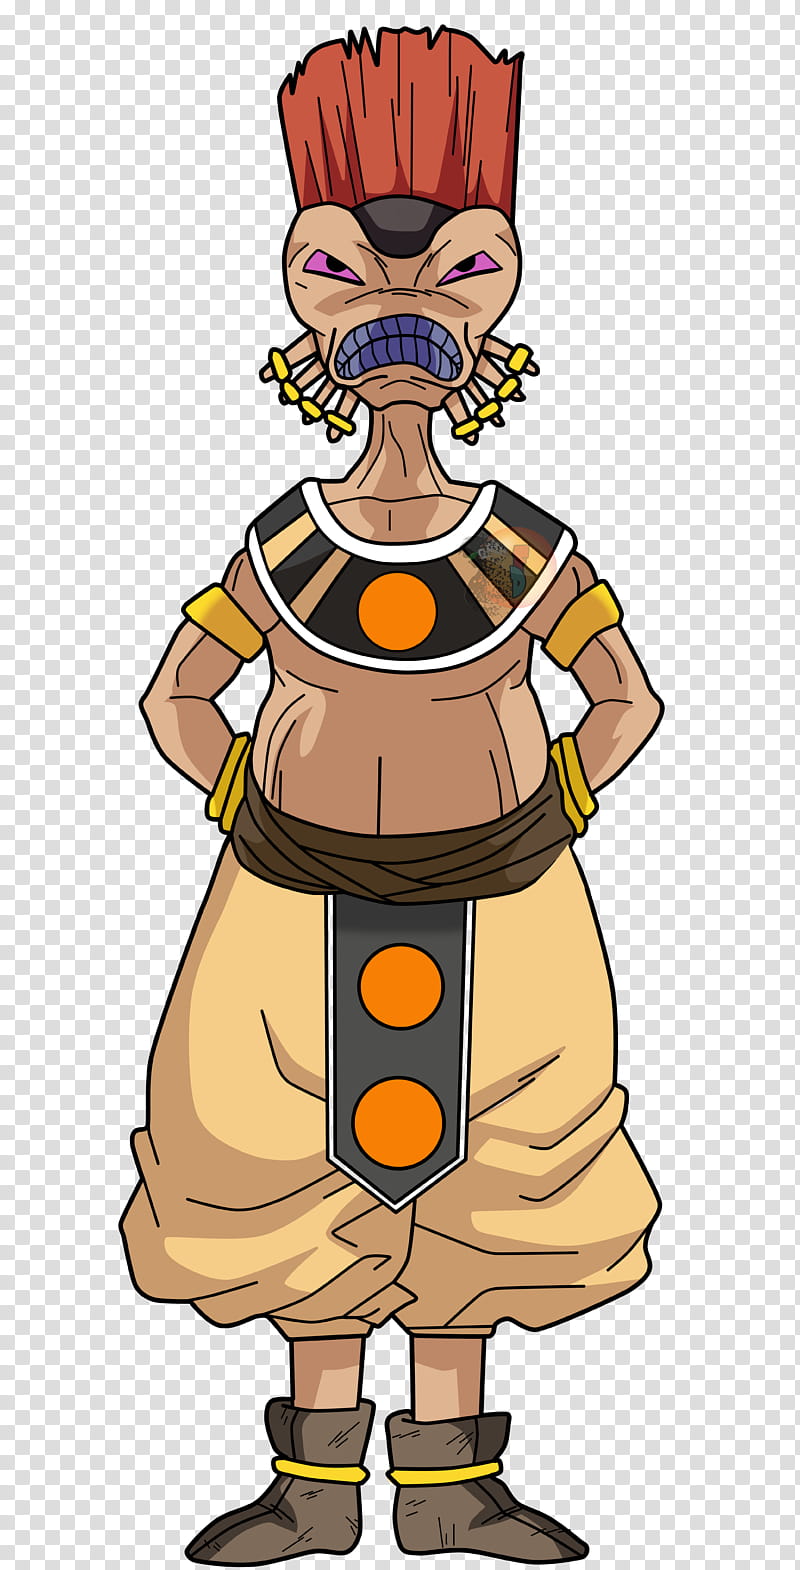 Arak Dios De La Destruccion  Completo FacuDibuja, brown alien cartoon character transparent background PNG clipart